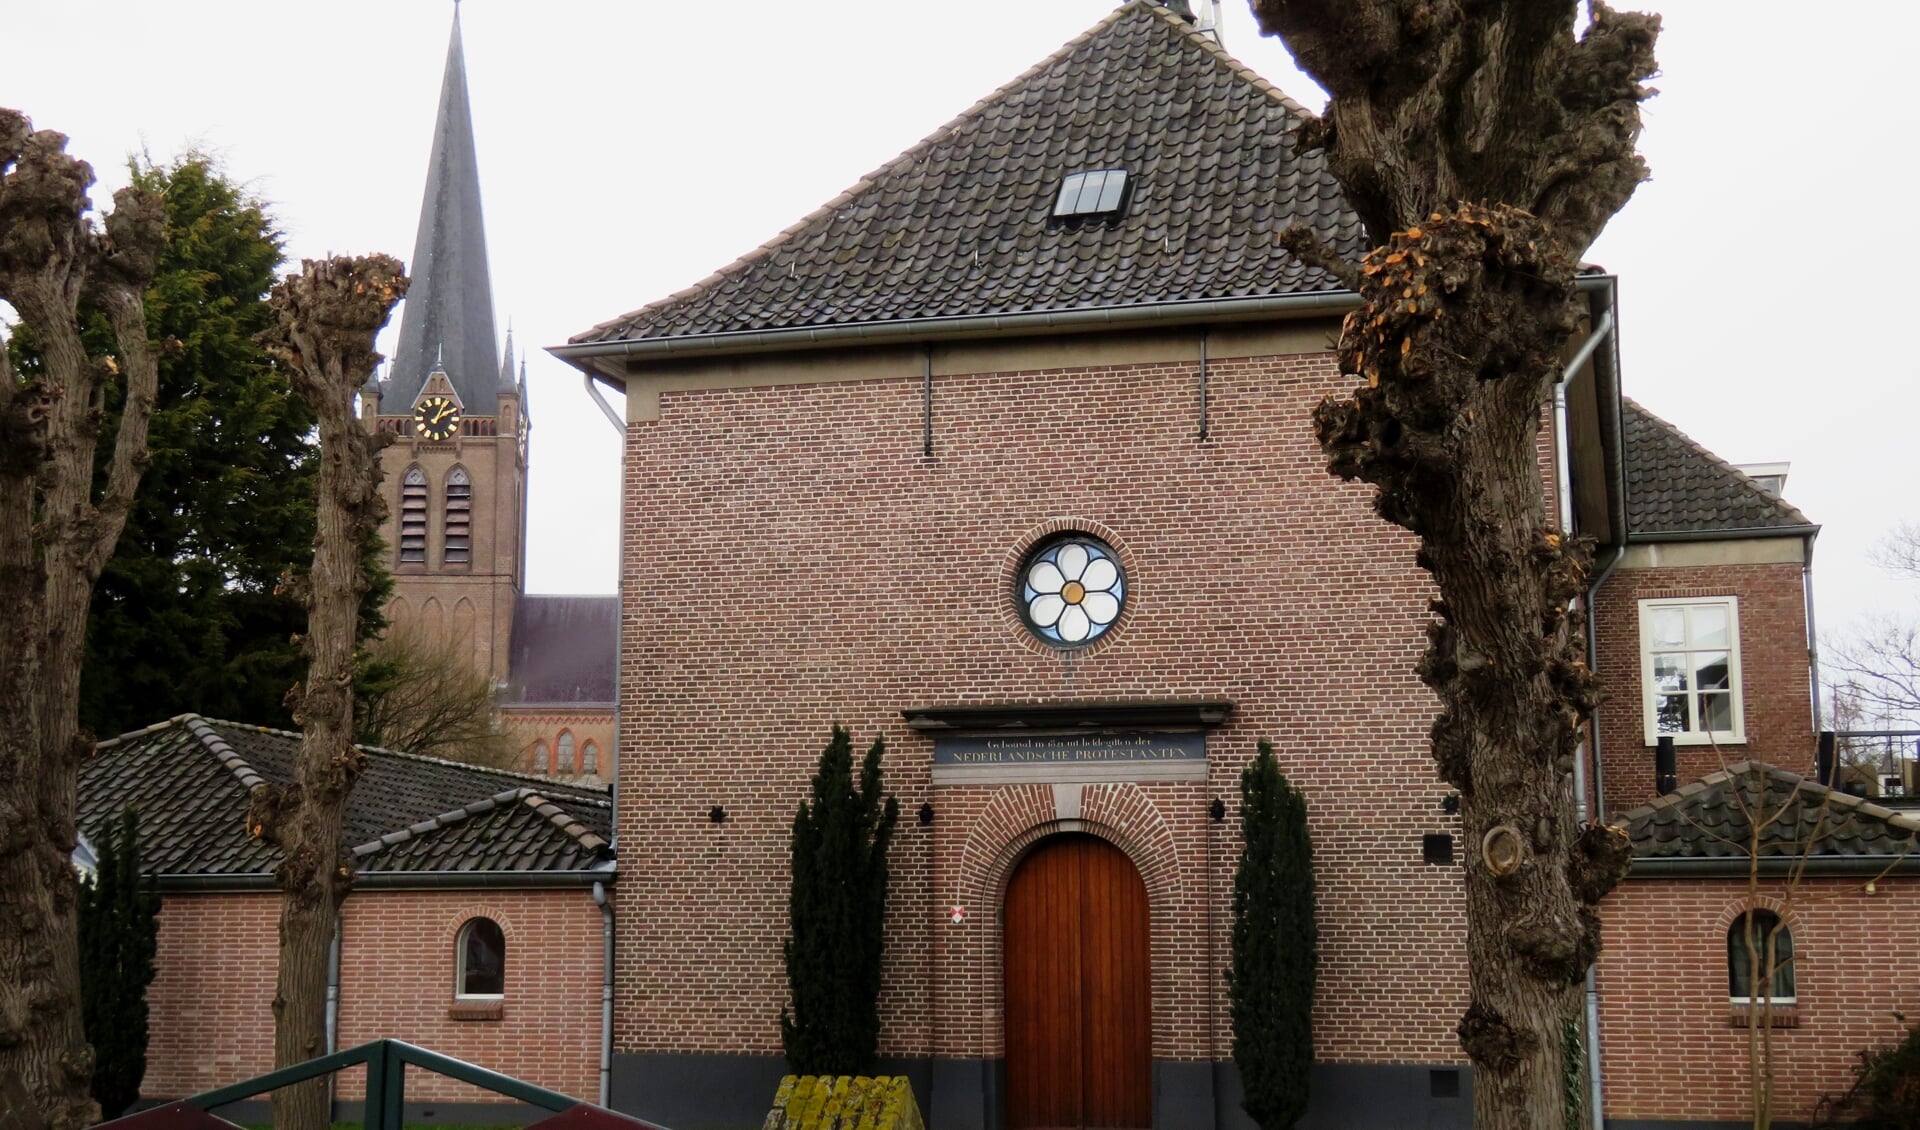 Protestantse kerk in Beuningen met de RK kerk op de achtergrond.